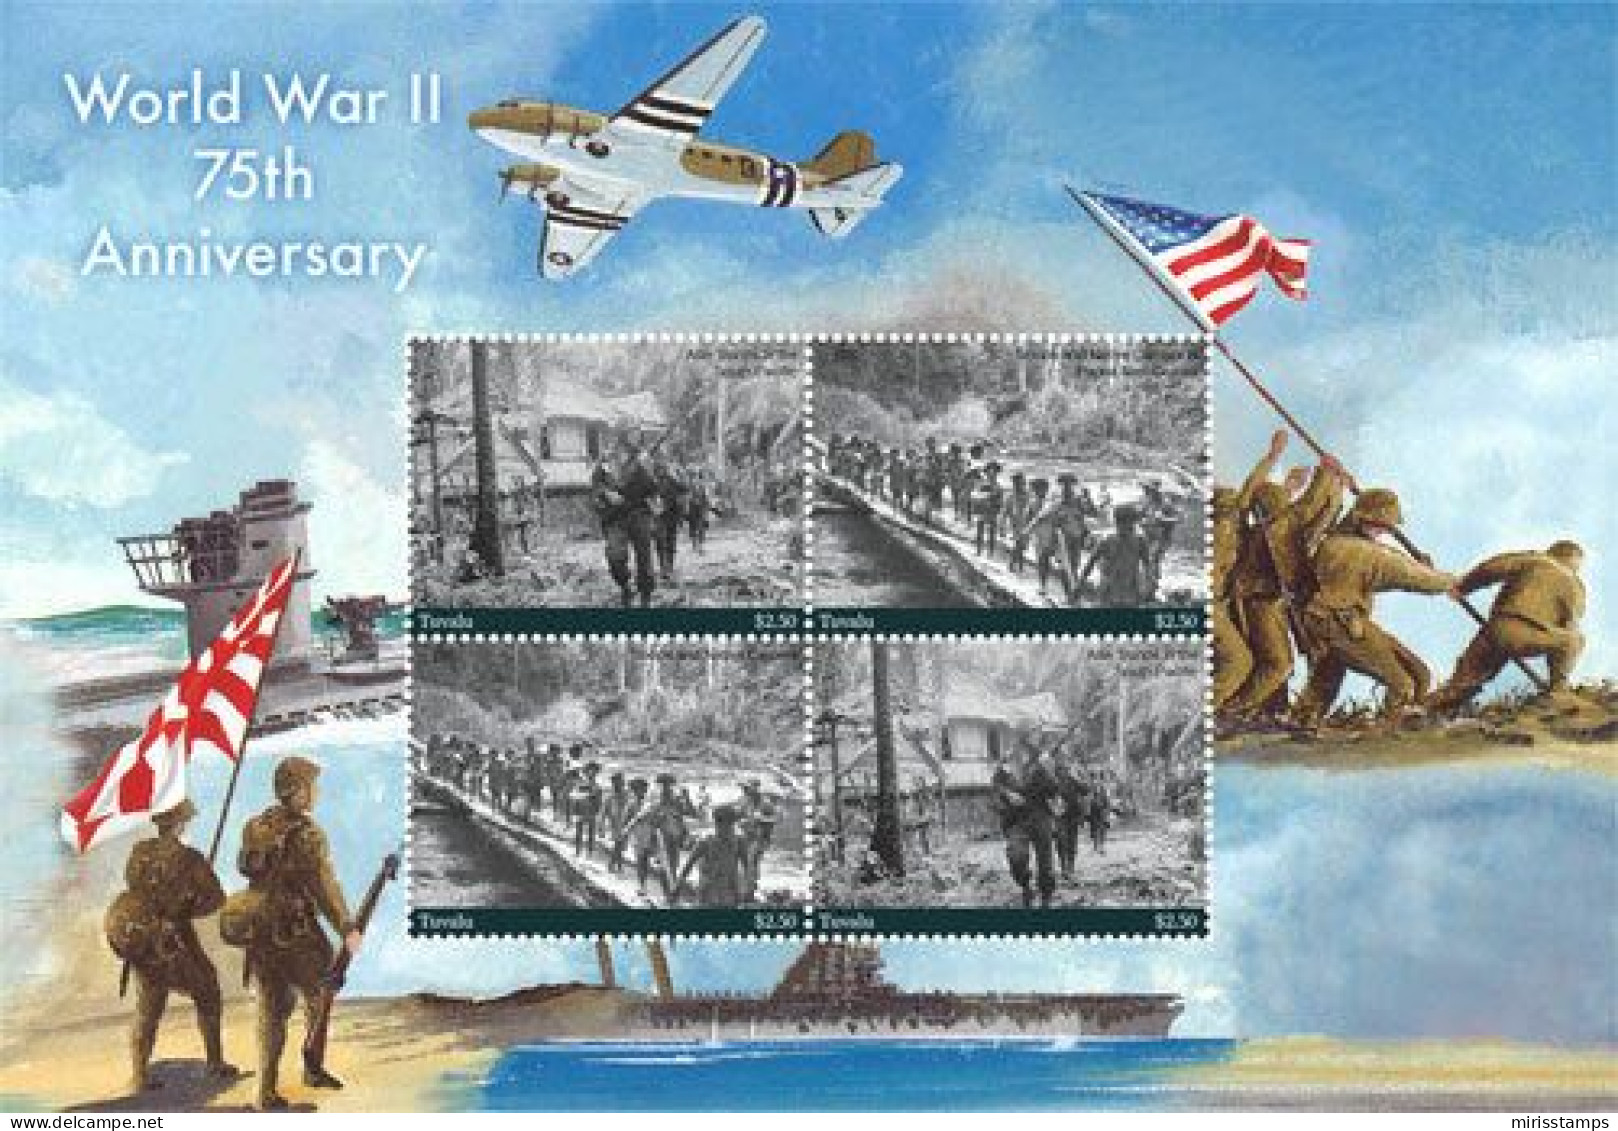 Tuvalu 2017 World War II, 75th Anniv. 4v M/s, Mint NH, History - World War II - Tuvalu